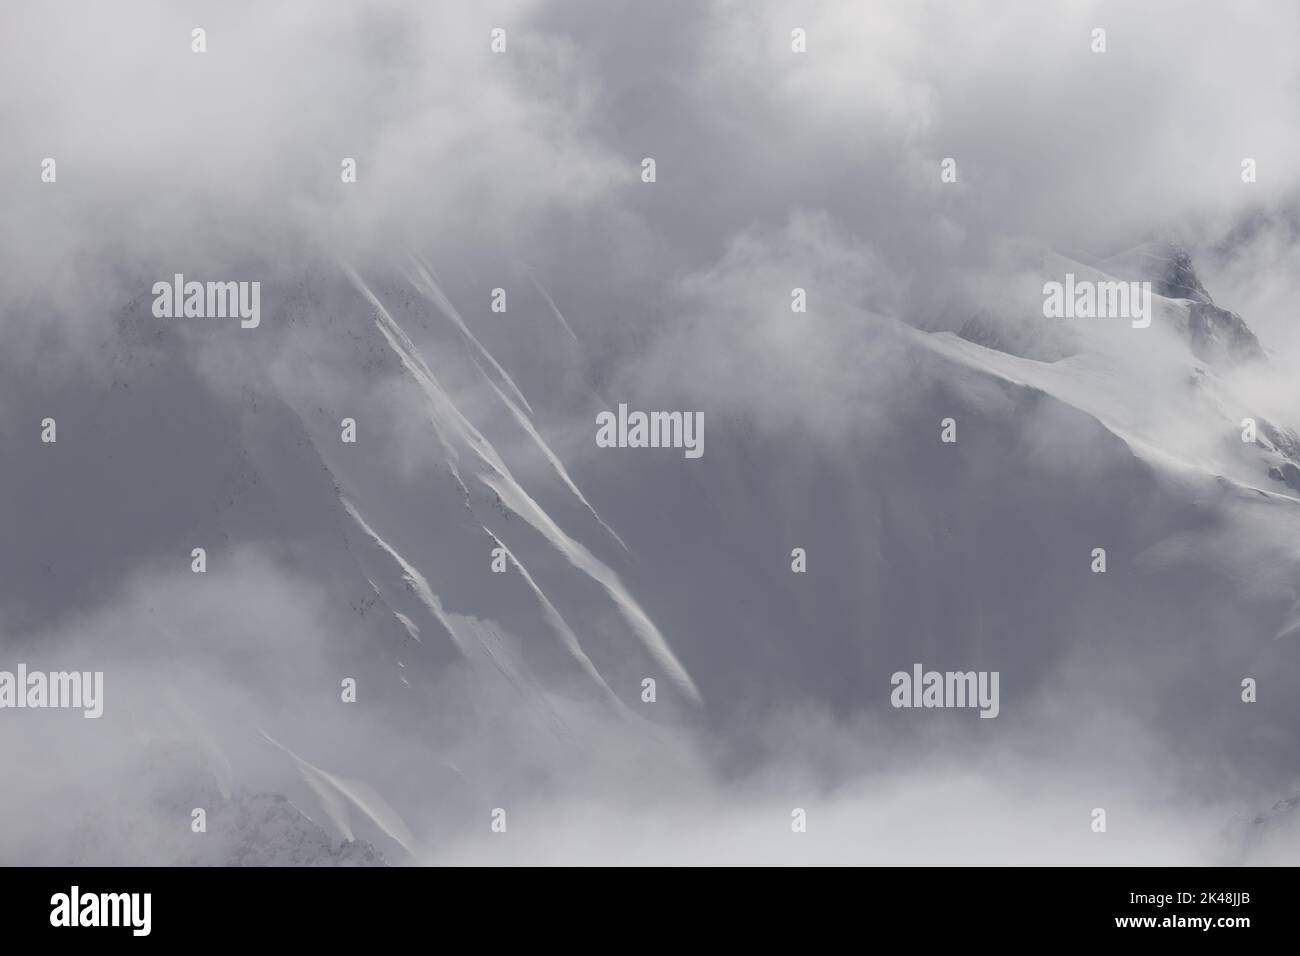 Von der Zugspitze aus hat man auch bei Nebel und Wolken spannende Aussichten auf die Alpengipfel. Besonders im Winter öffnen sich atemberaubende Ausblicke auf die Bergwelt der Alpen. Hier sieht man die schneebedeckten Konturen am Gipfel der Zugspitze. Stock Photo